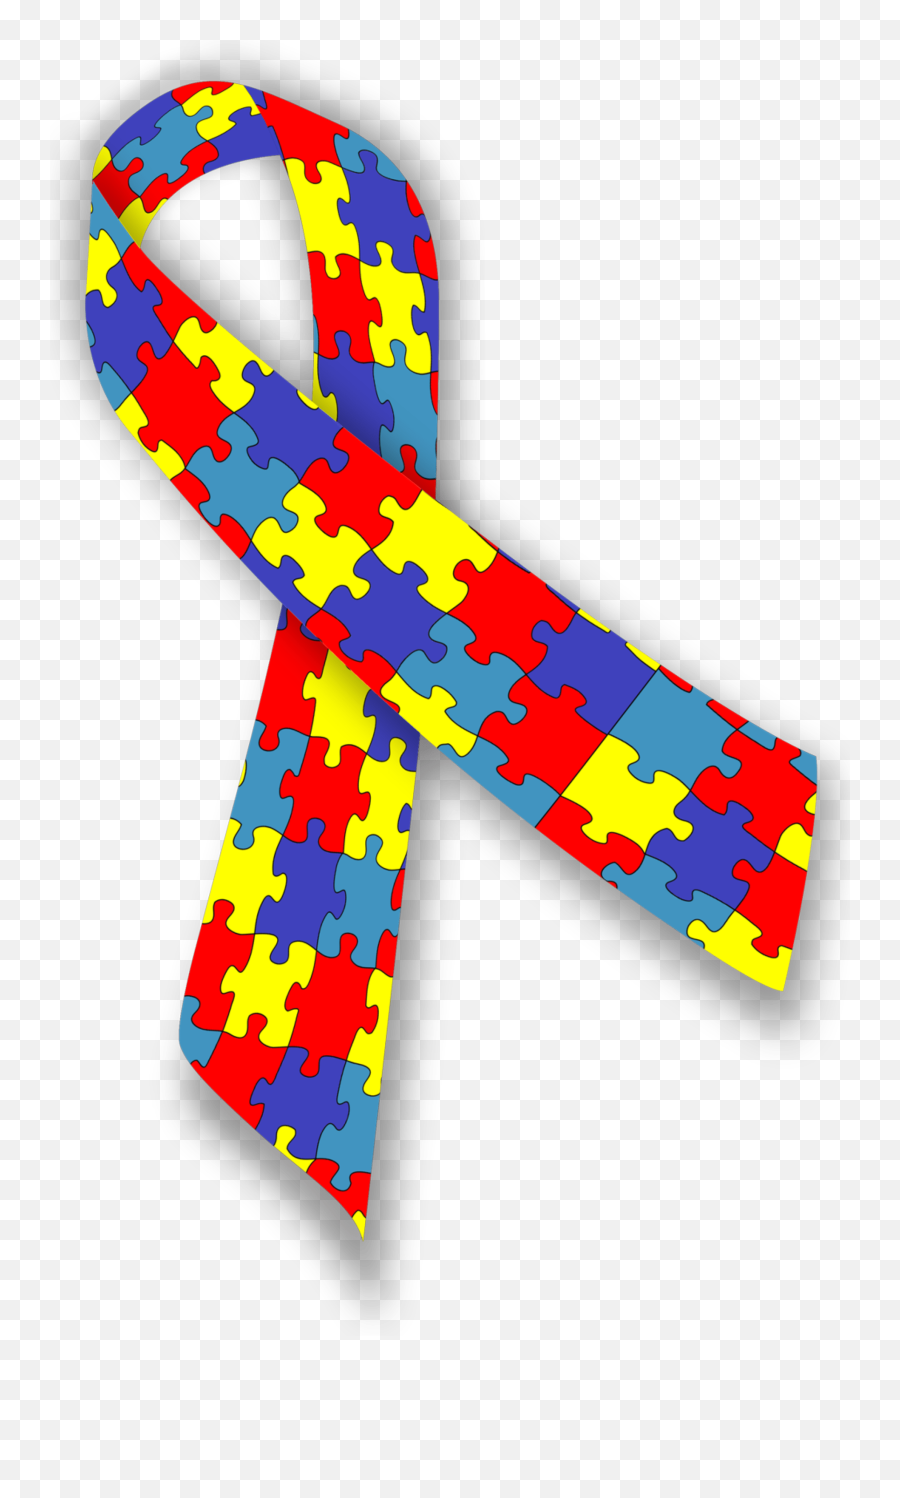 List Of Awareness Ribbons - Autism Awareness Ribbon Emoji,Breast Cancer Ribbon Emoji